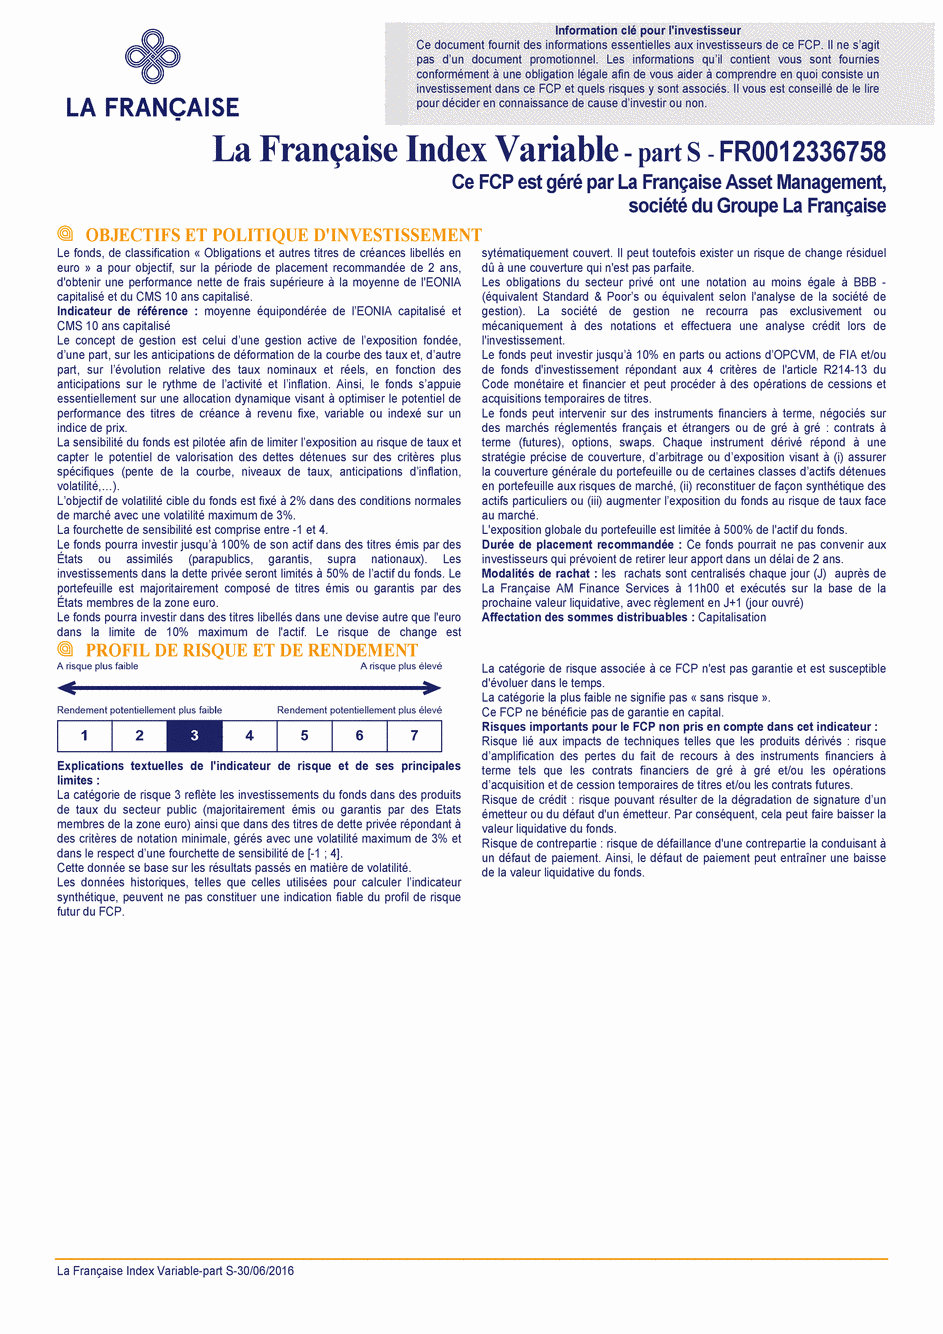 DICI La Française Moderate Multibonds - Part S - 30/06/2016 - Français